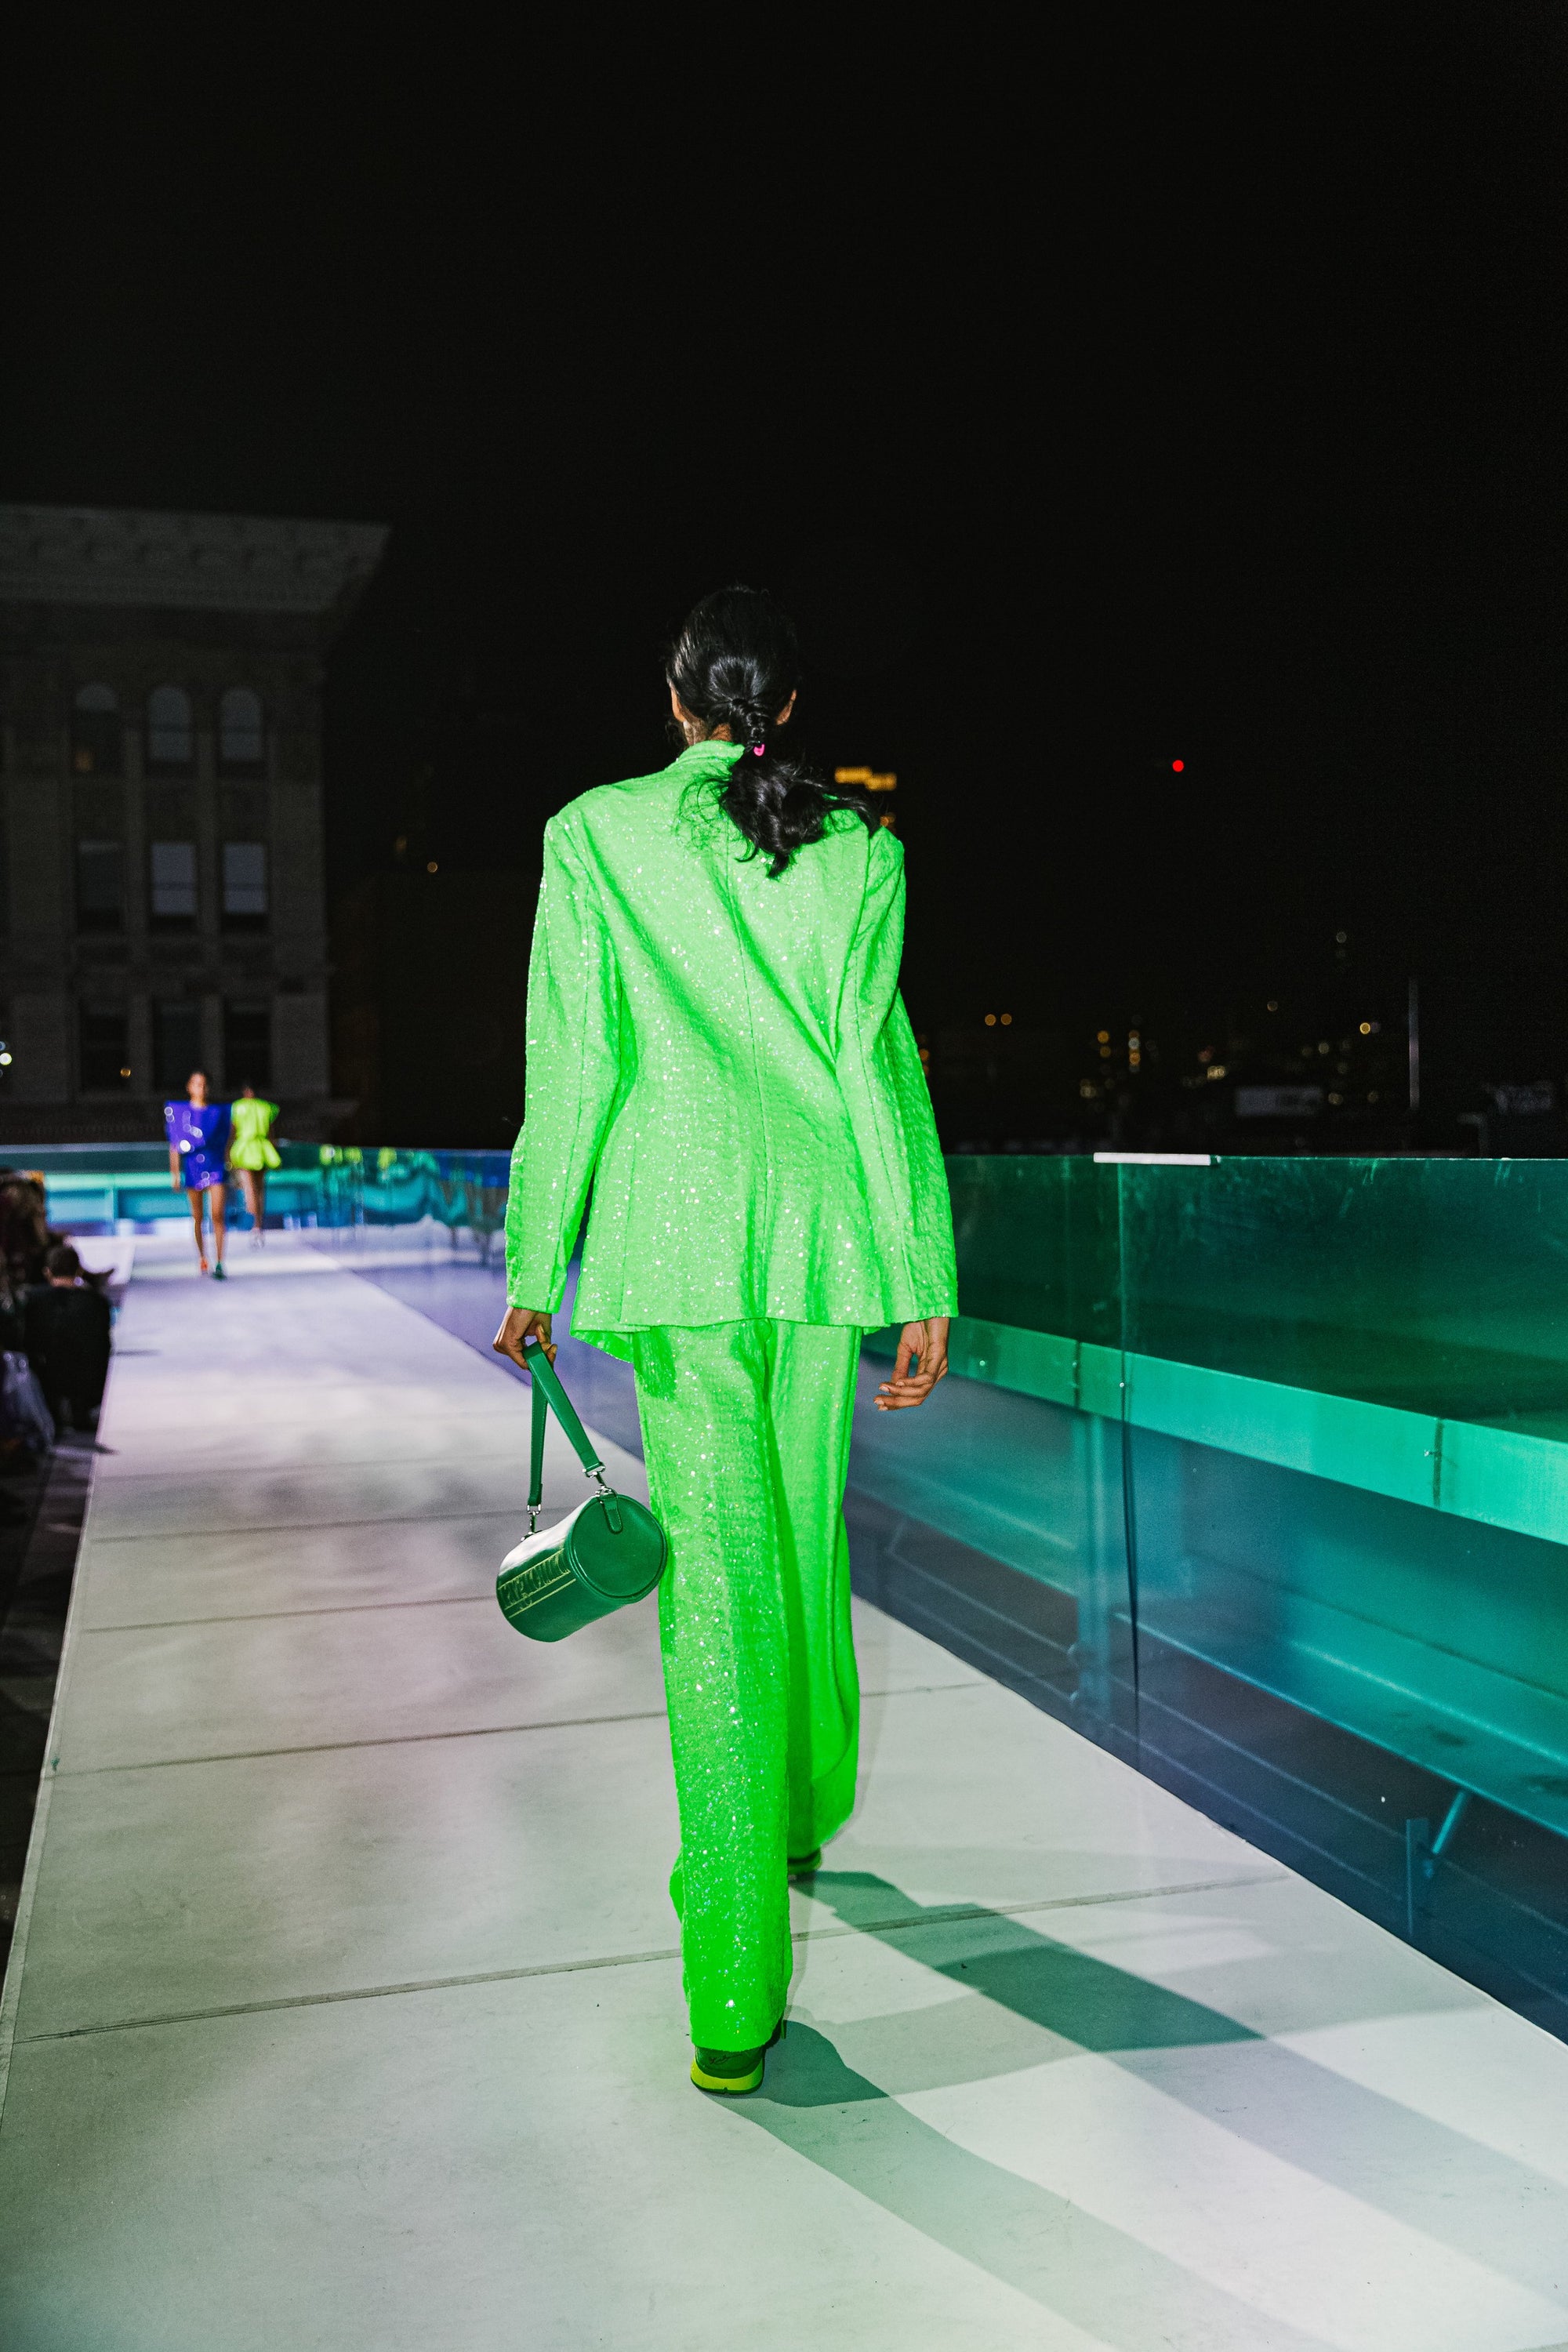 Suit Pant in Neon Green Sequin